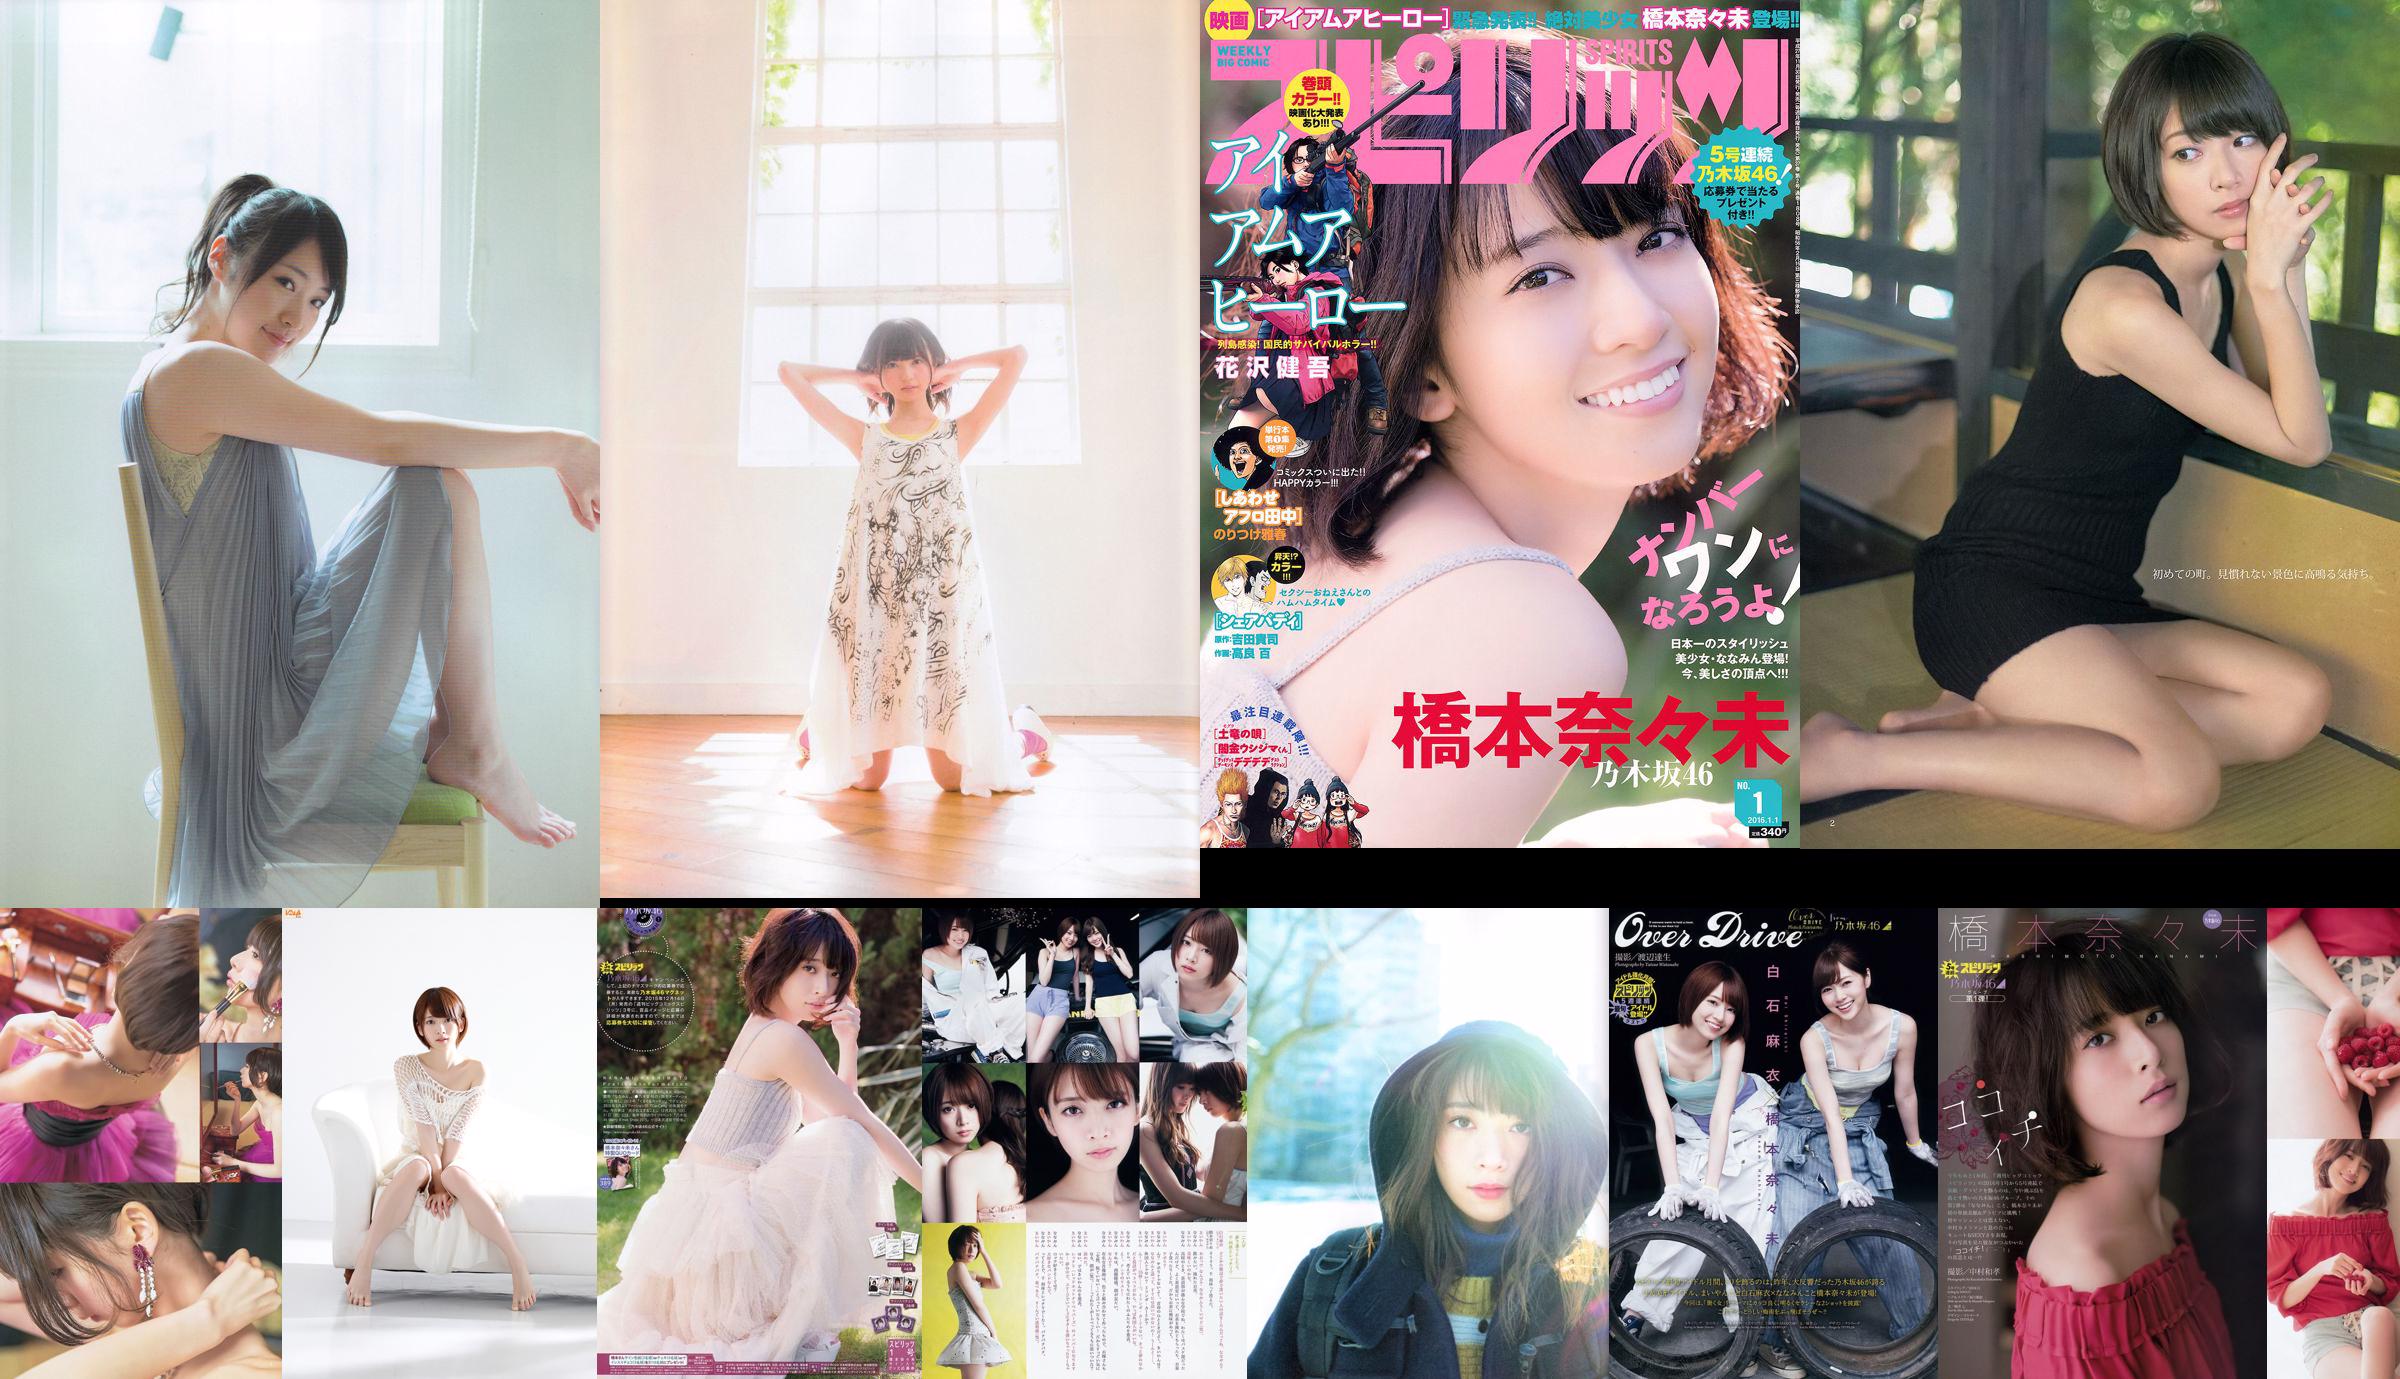 Nami Hashimoto, Mio Aoyama BABYMETAL [Weekly Young Jump] 2013 No. 29 Photo Magazine No.9ffce0 หน้า 3